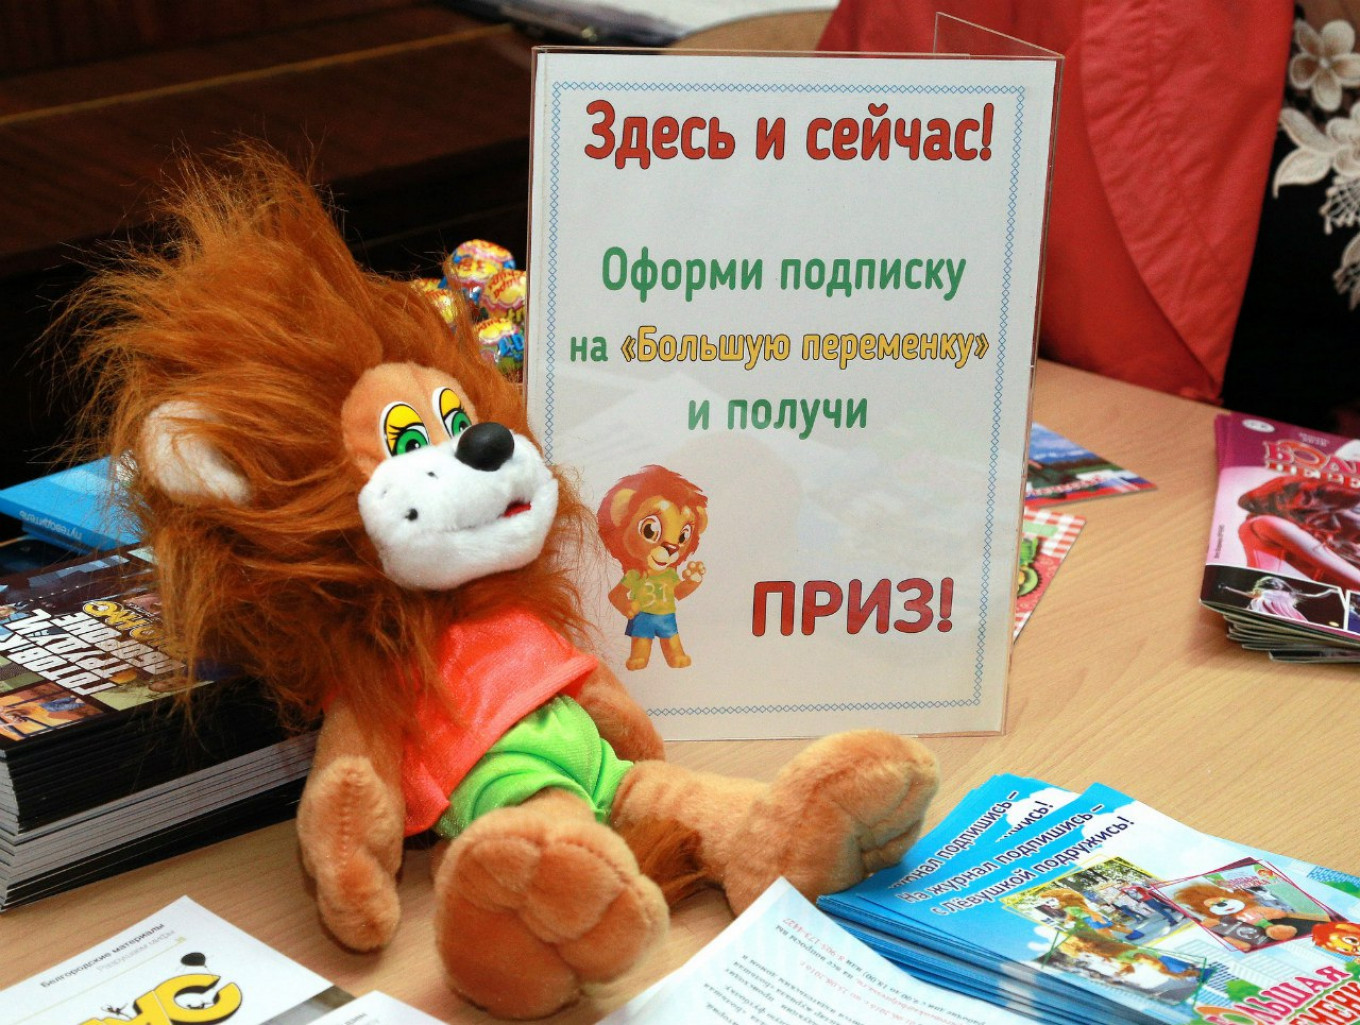 
					"Here and Now! Subscribe to Bolshaya Peremenka and get a prize!"					 					Courtesy of Bolshaya Peremenka				